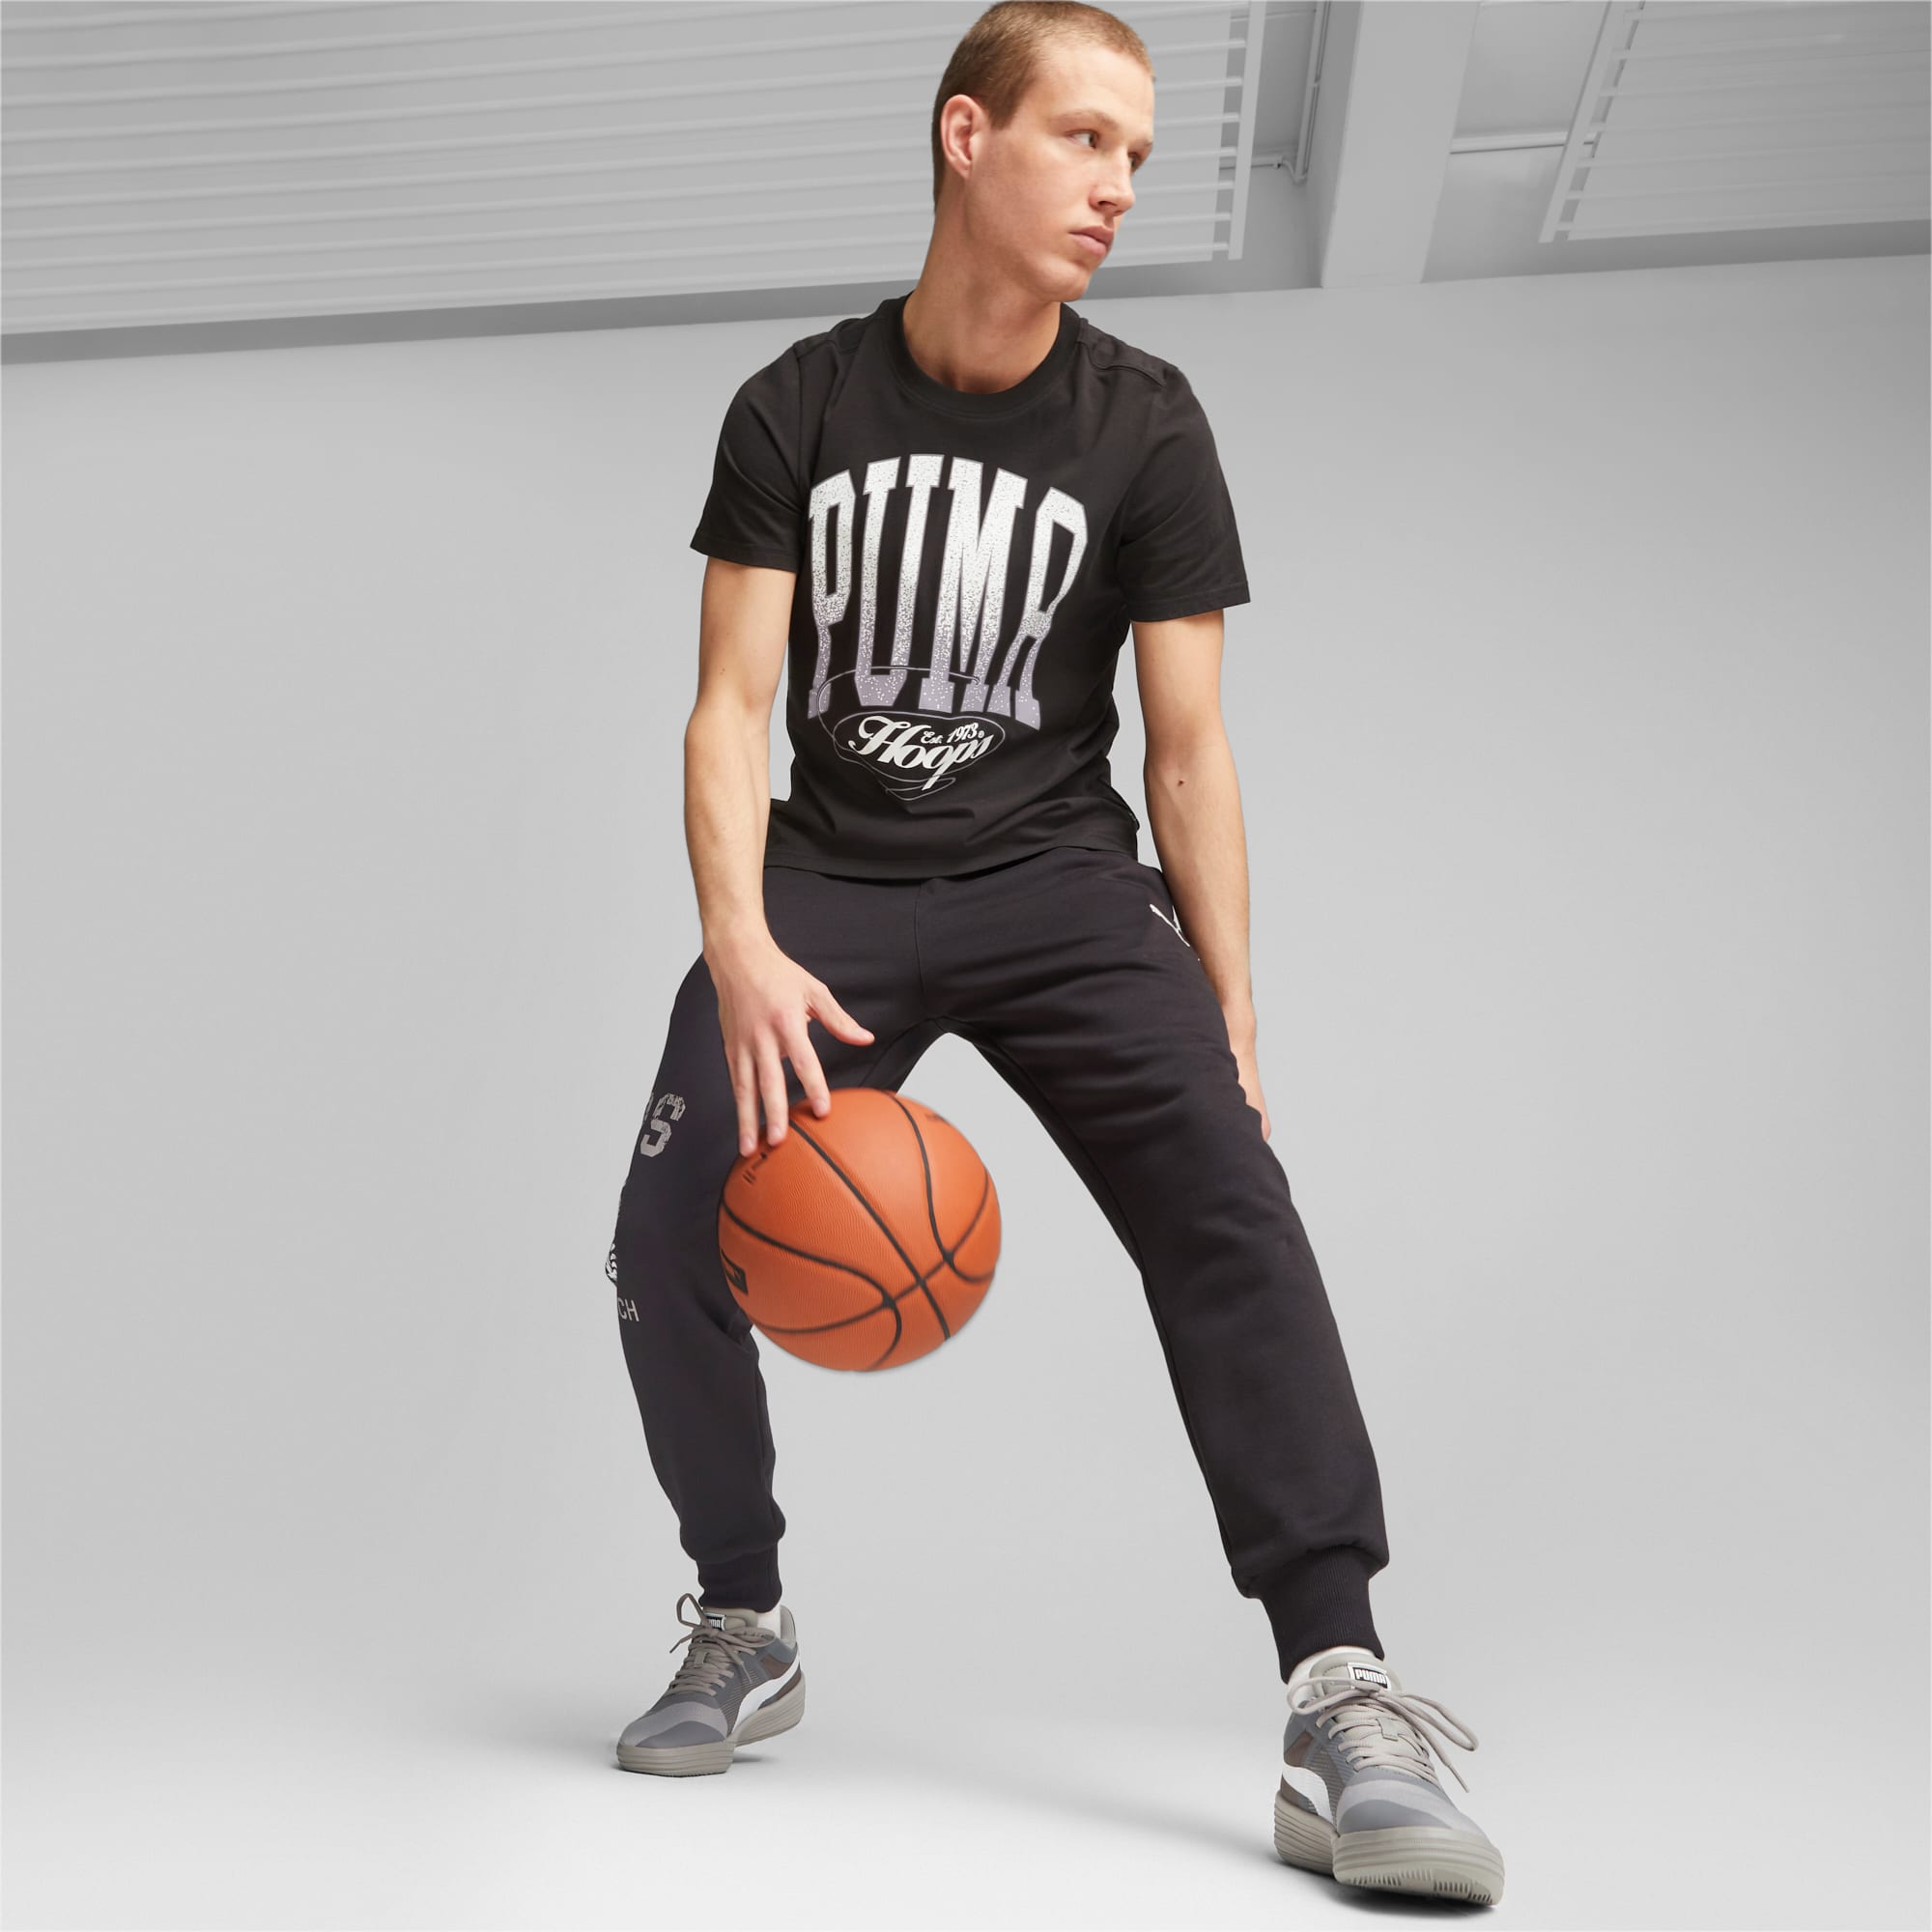 PUMA Clyde All-Pro Team Basketballschuhe Für Herren, Grau/Weiß, Größe: 39, Schuhe